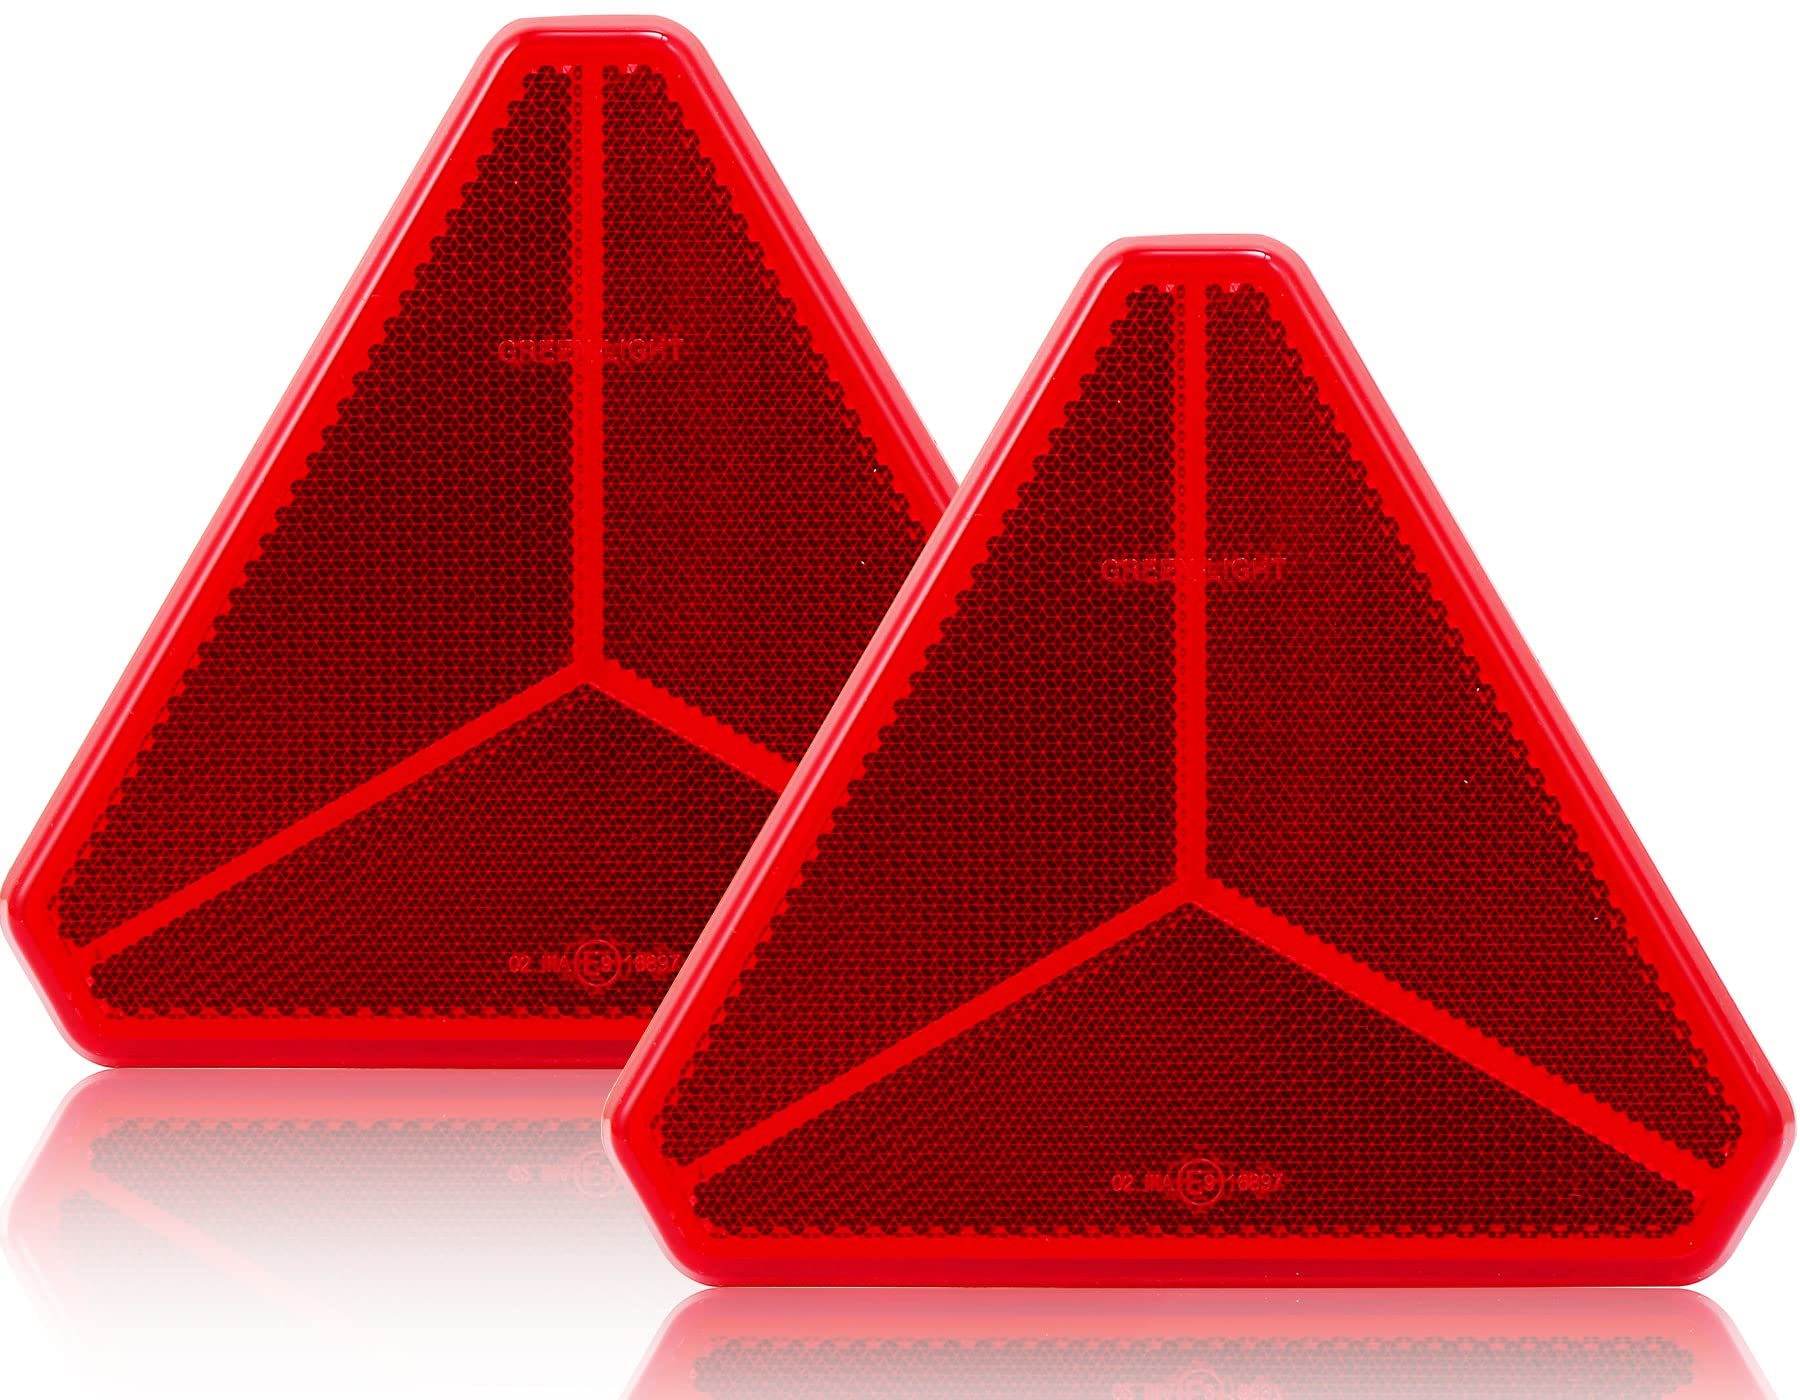 SPARKMOTO Anhänger dreieck Reflektor,Reflektoren anhänger selbstklebend,Rote Dreieck Rückstrahler,Anhänger Reflektor Dreieck,Nach ECE R3 Class IIIA Norm,Rot Reflektor Dreiecke für Anhänger(2 Stück) von SPARKMOTO